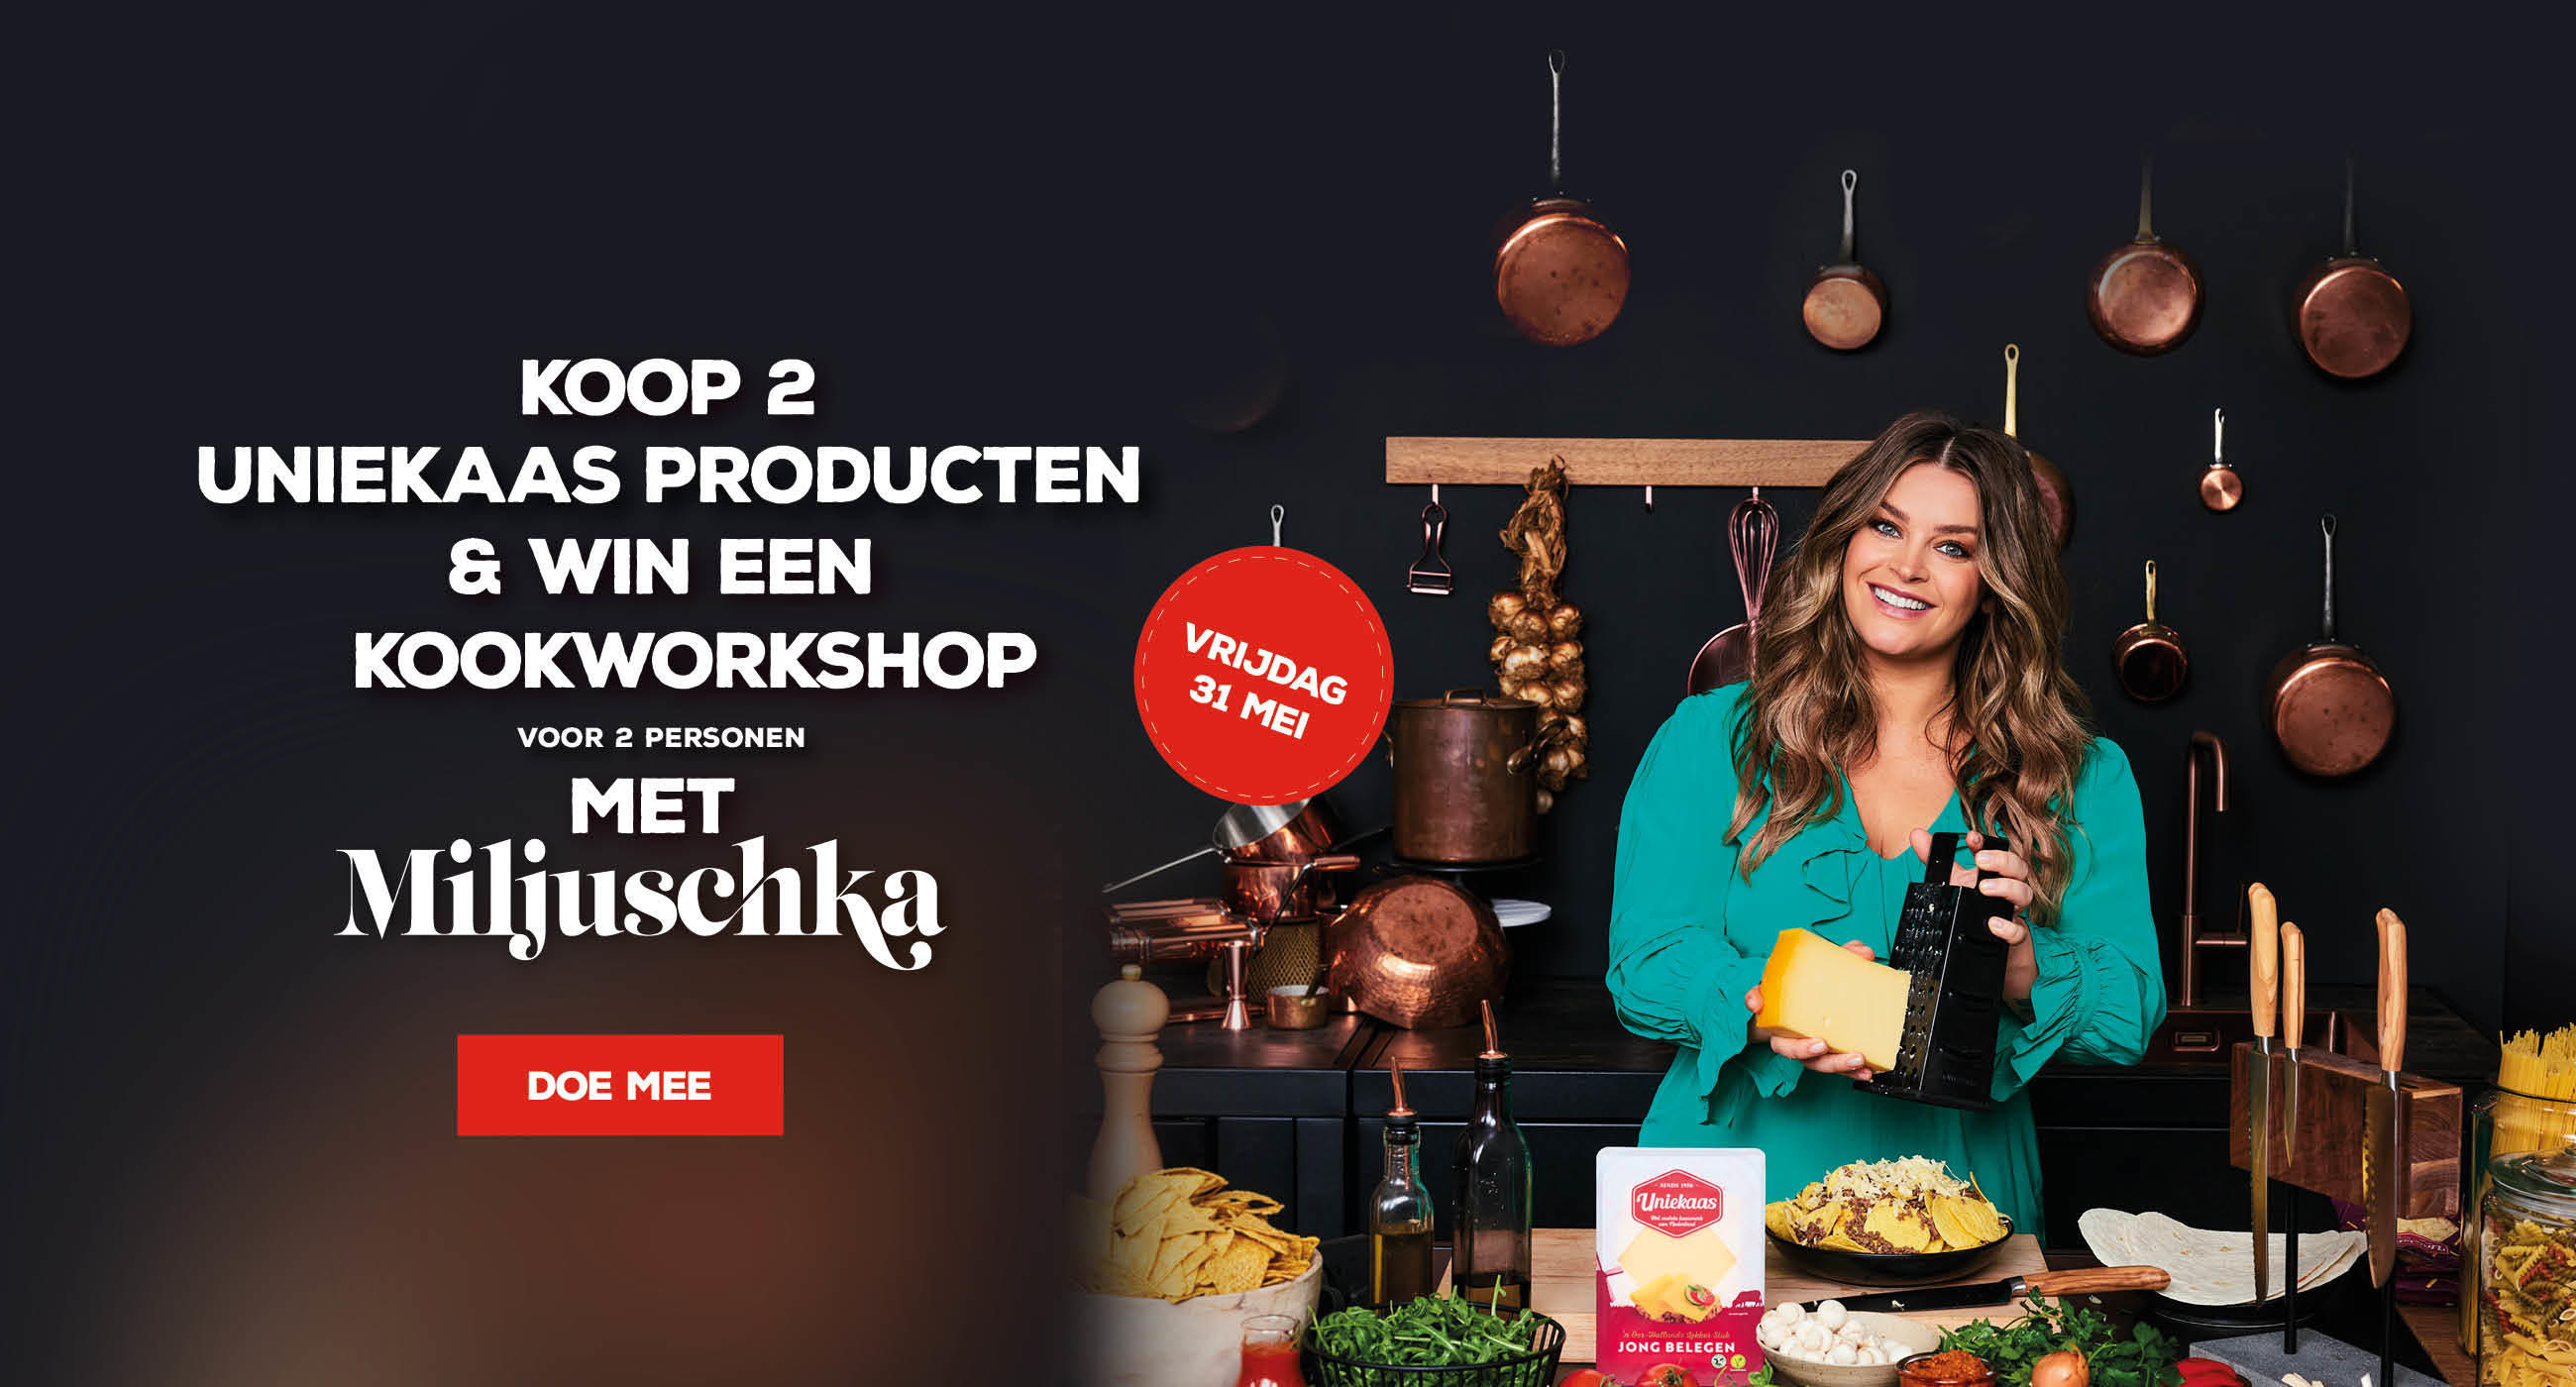 Koop&Win een kookworkshop met Miljuschka